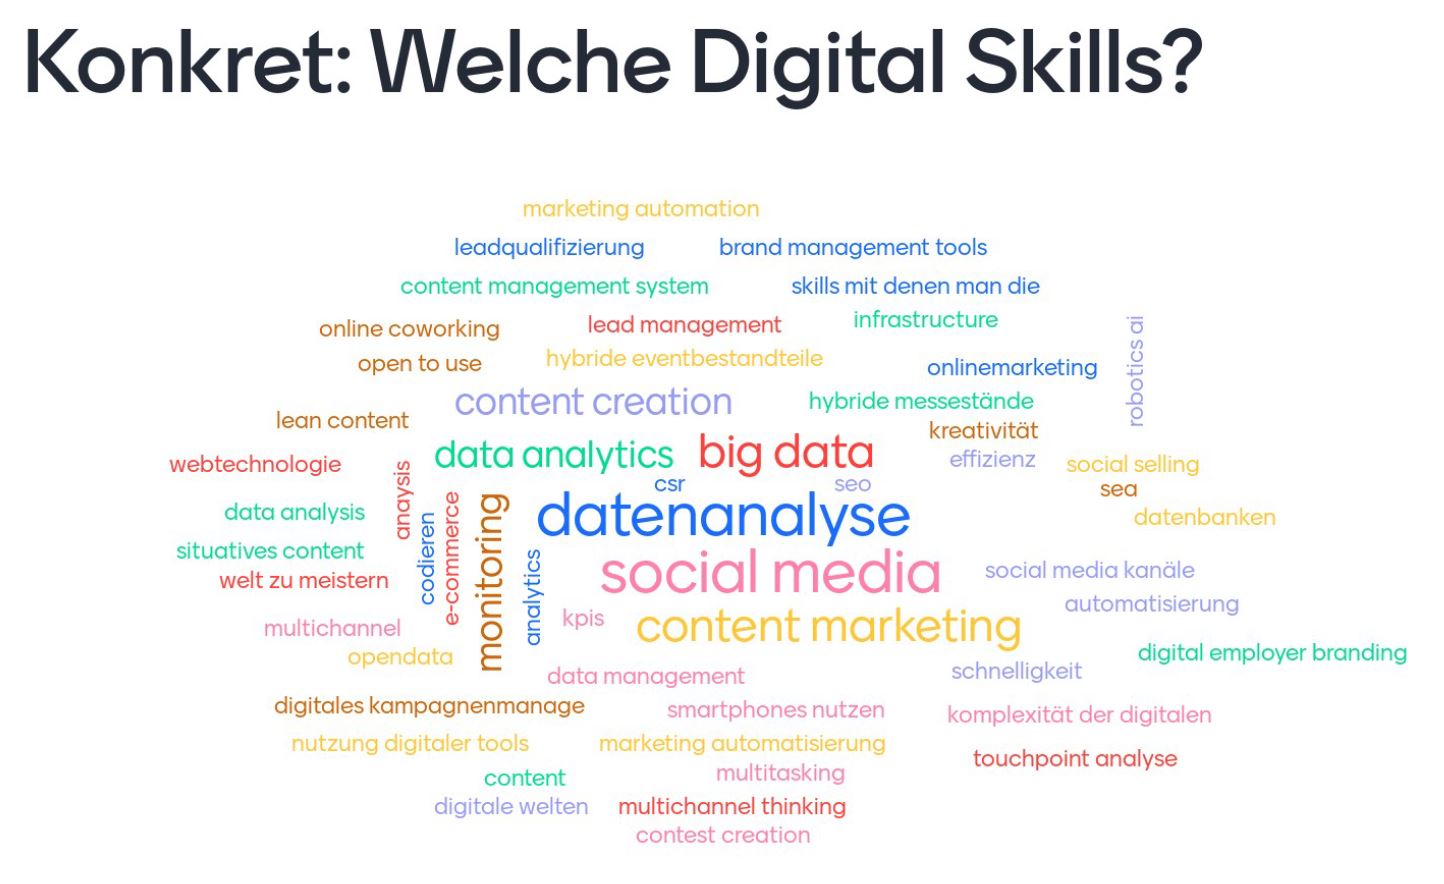 Umfrage-Ergebnisse zu digitalen Skills von Fachkräften im B2B-Marketing